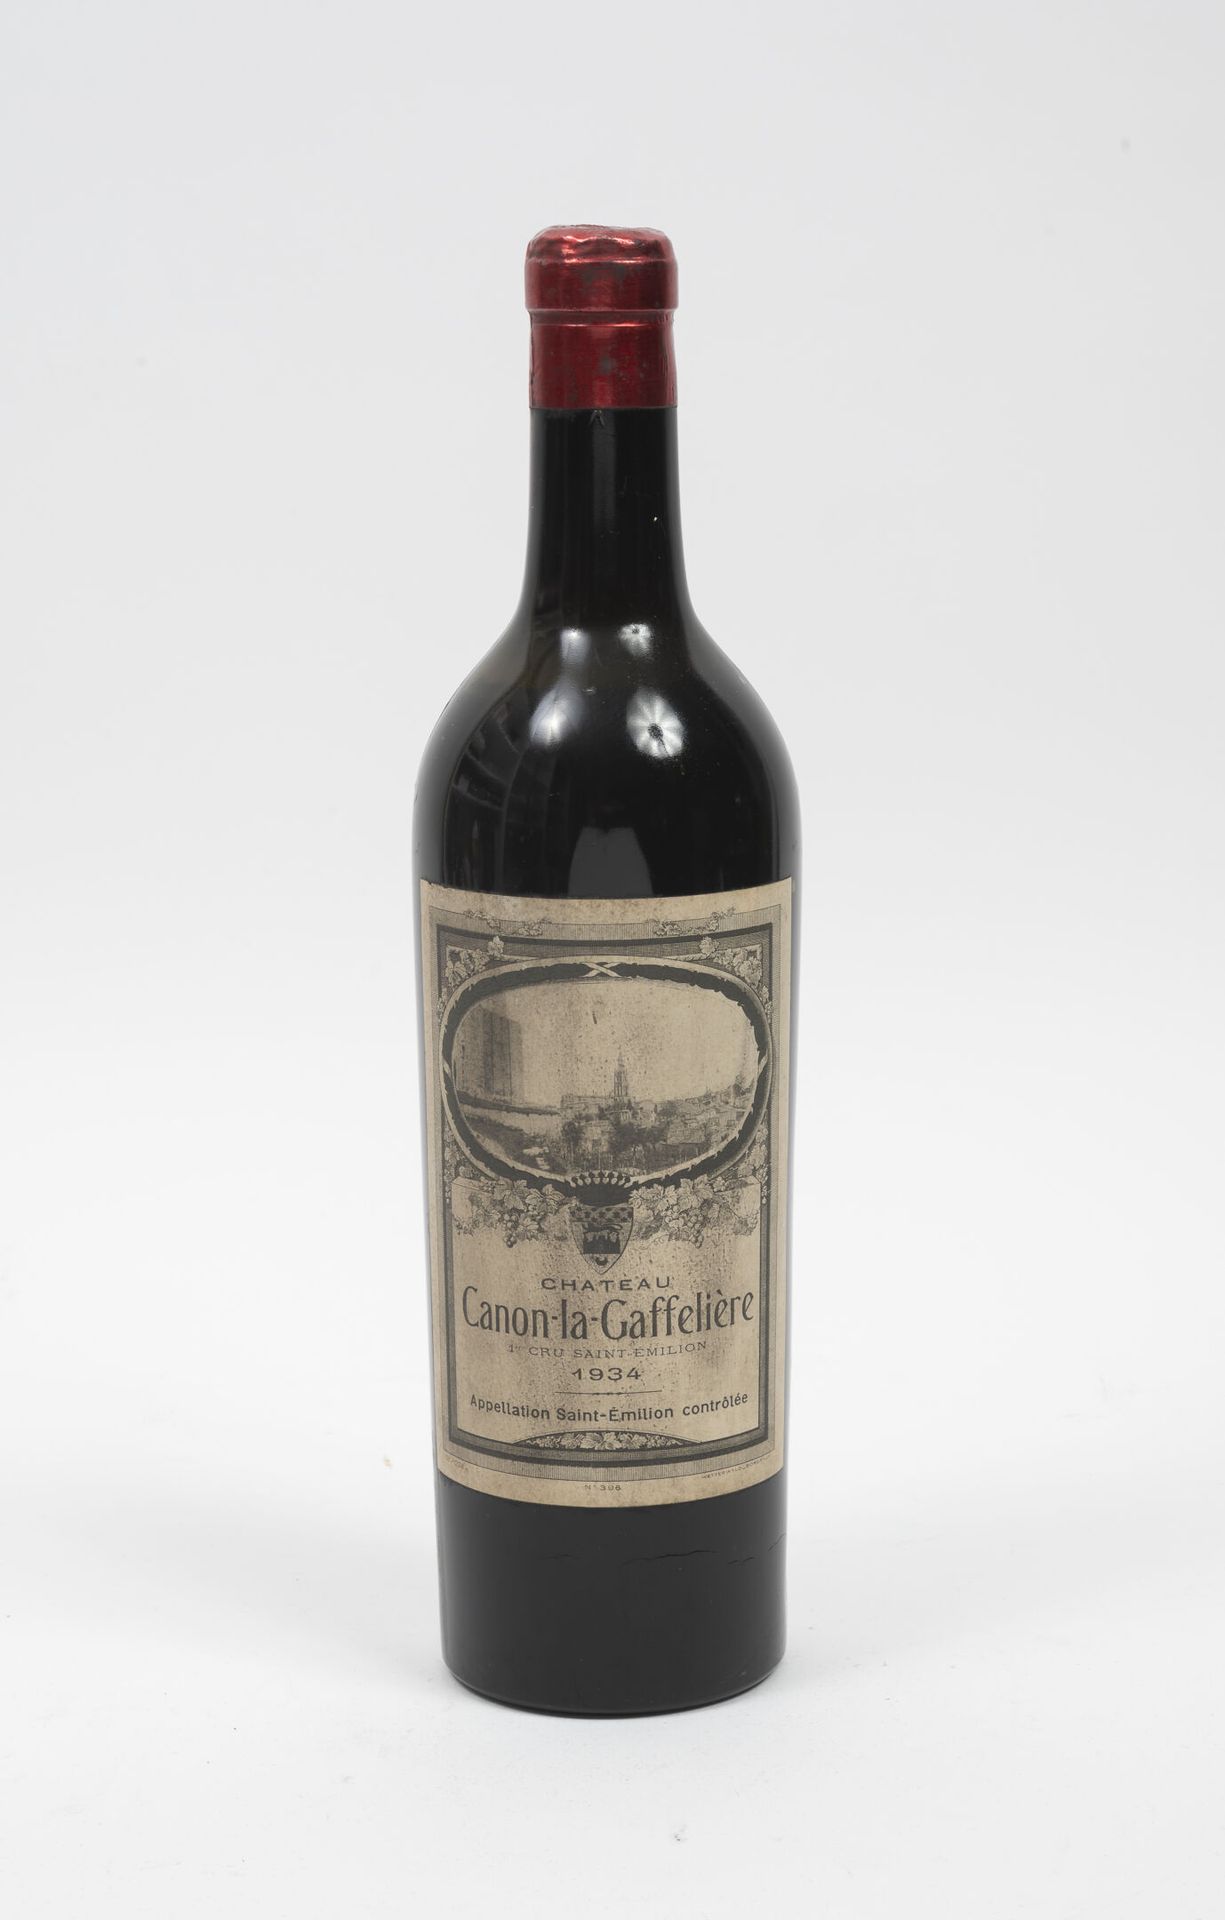 CHÂTEAU CANON-LA-GAFFELIERE 1 bottiglia, 1934.

Da metà spalla a livello della s&hellip;